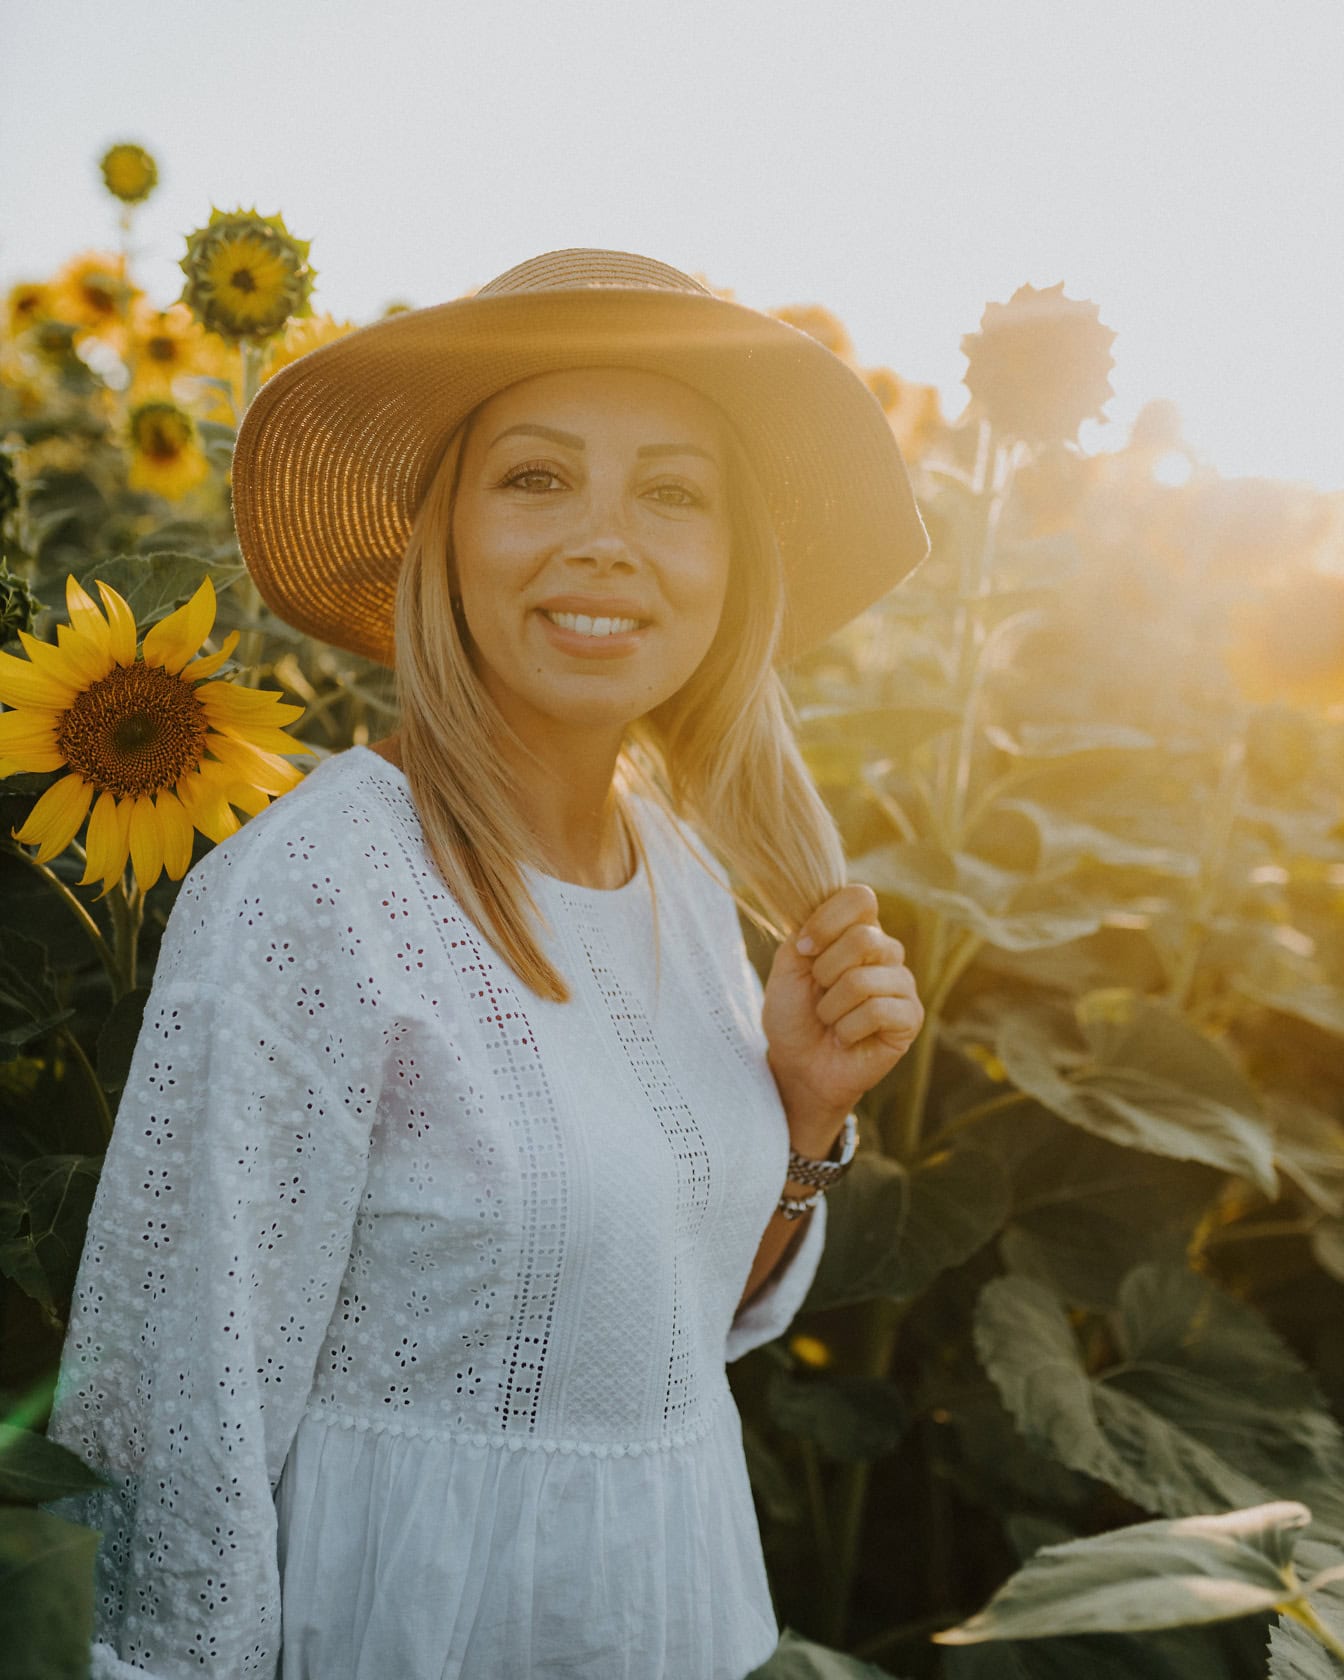 Portrét usmievavého vidieckeho dievčaťa v slamenom klobúku v slnečnicovom poli s jasným slnečným svetlom ako podsvietením